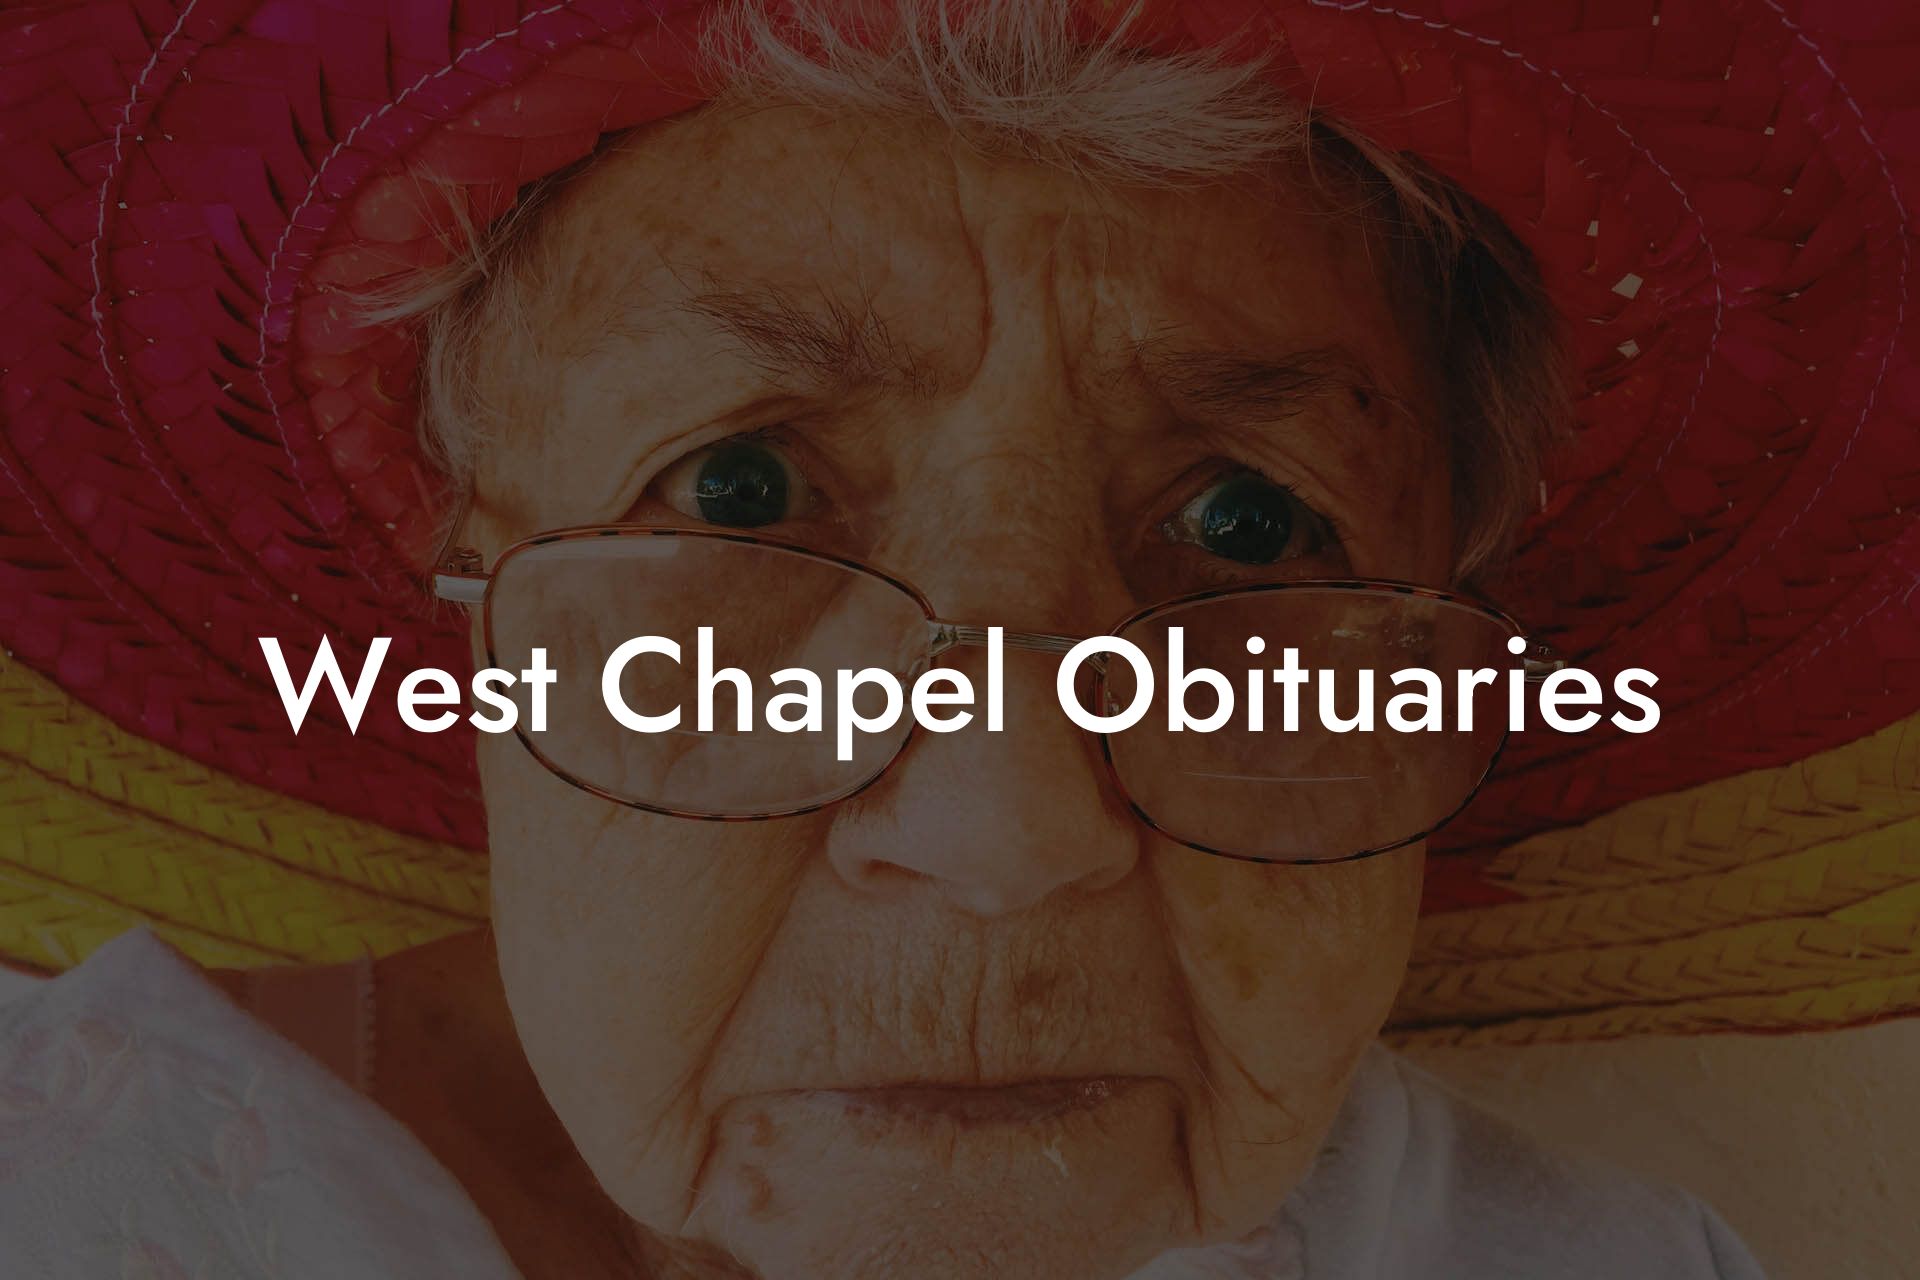 West Chapel Obituaries